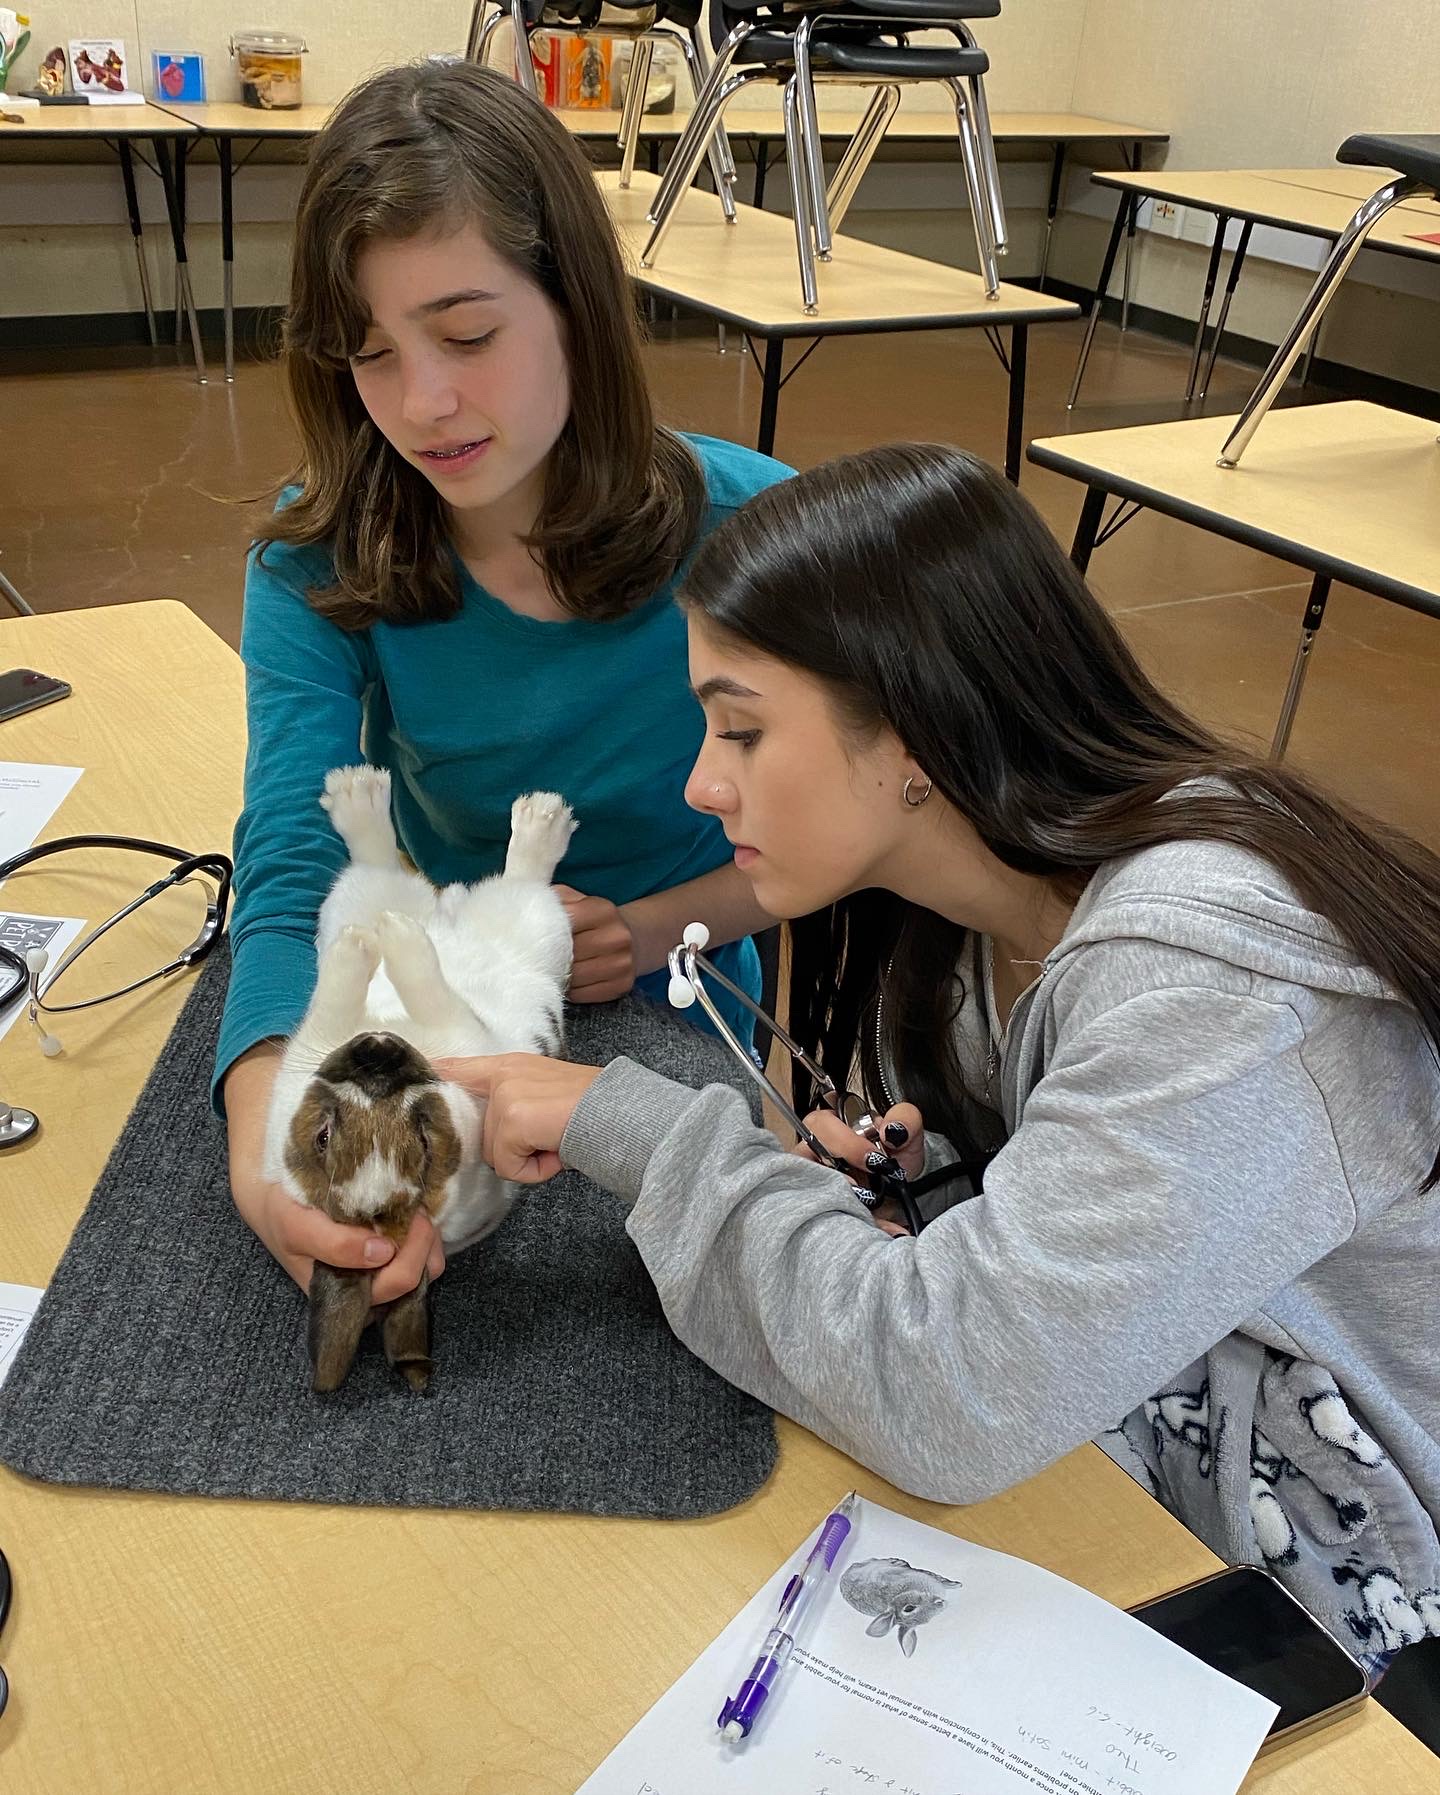 Students-examine-rabbit